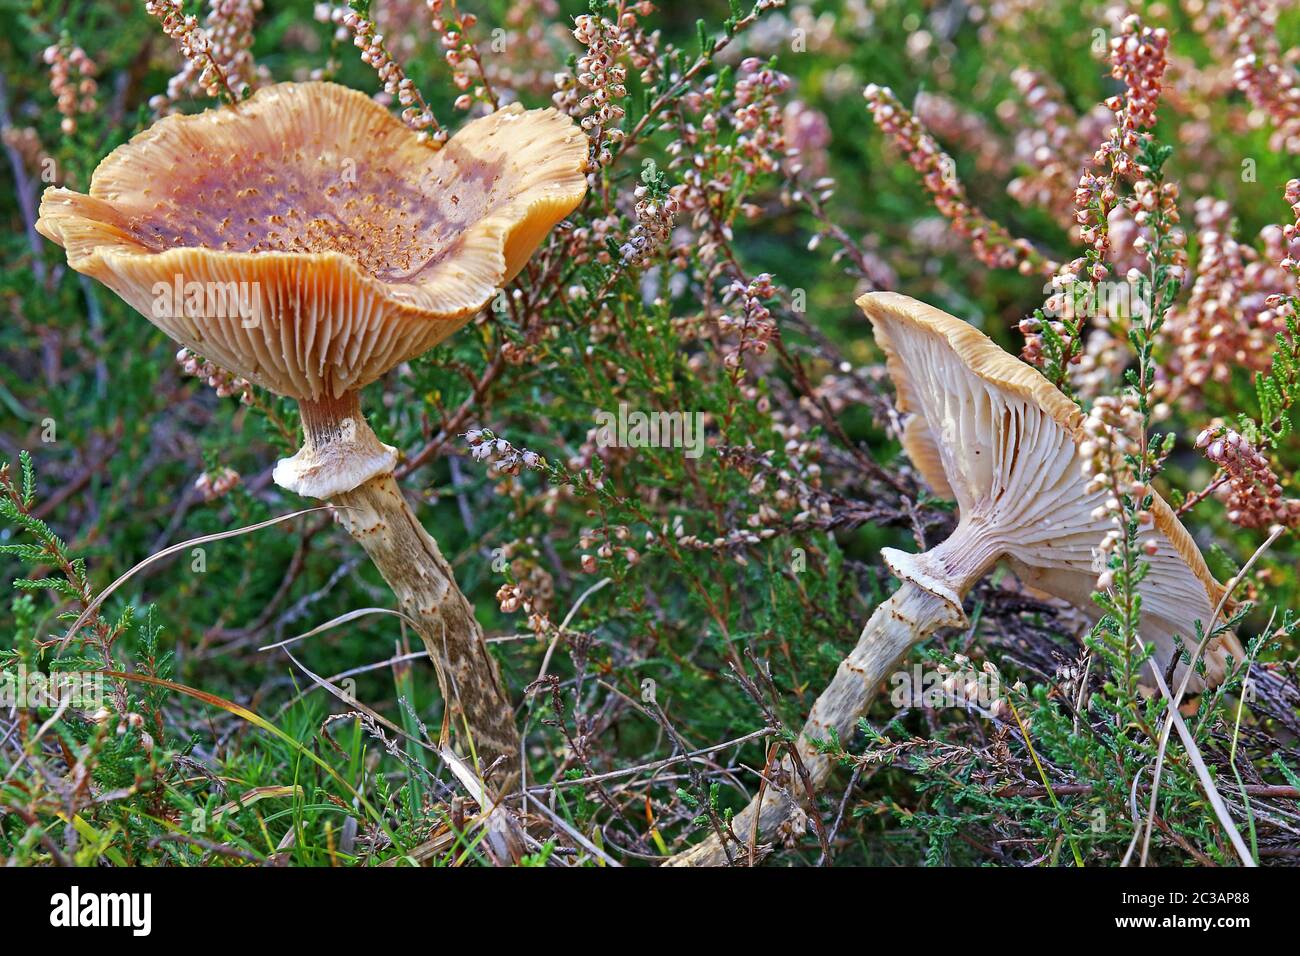 Hallimasch Armillaria spec between Besenheide Stock Photo